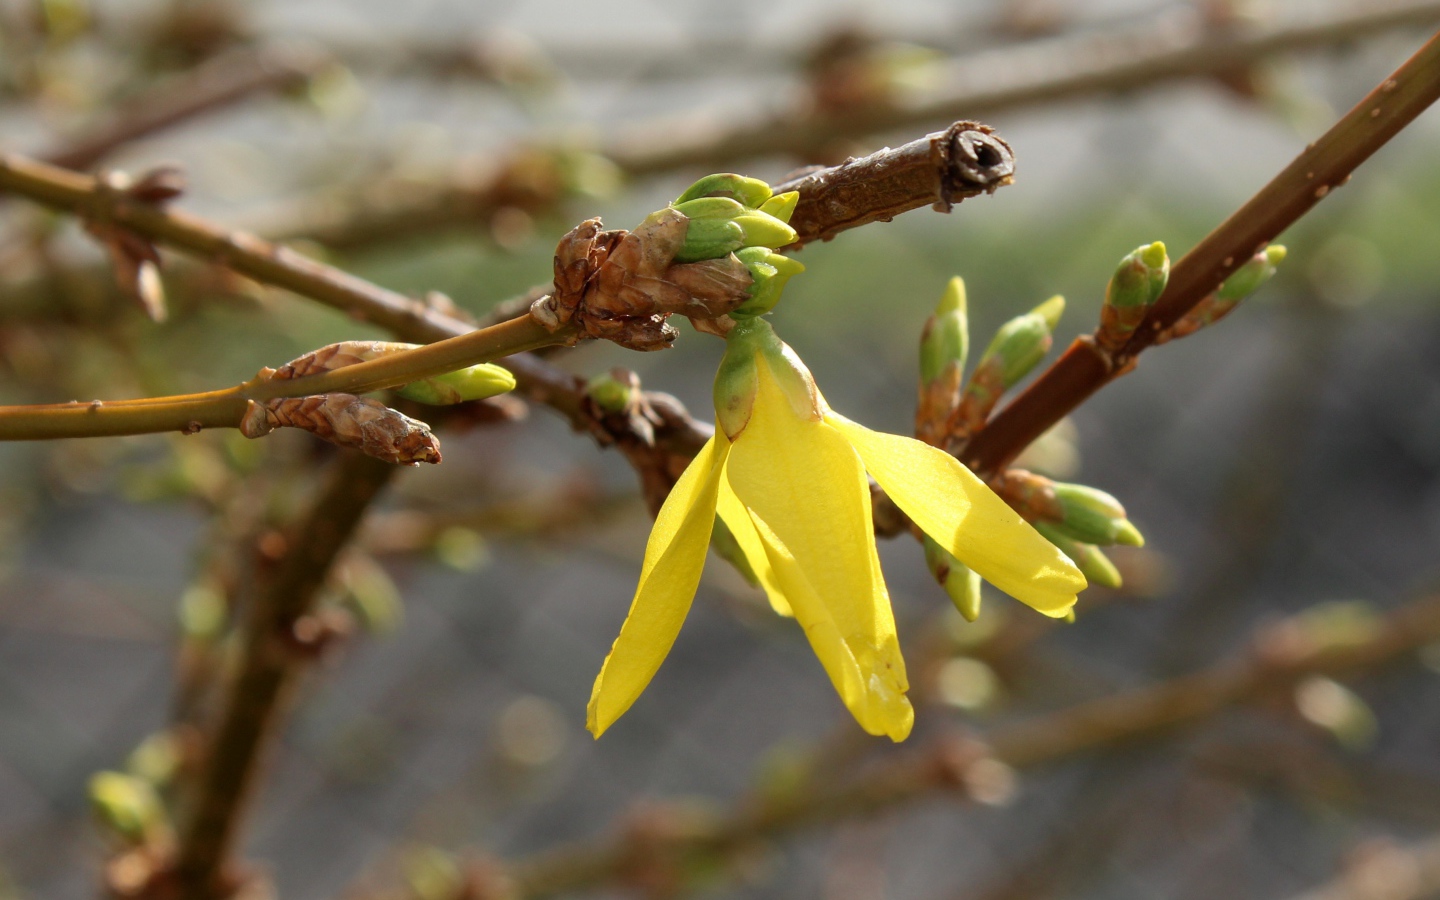 Желтый цветок на ветке дерева с почками